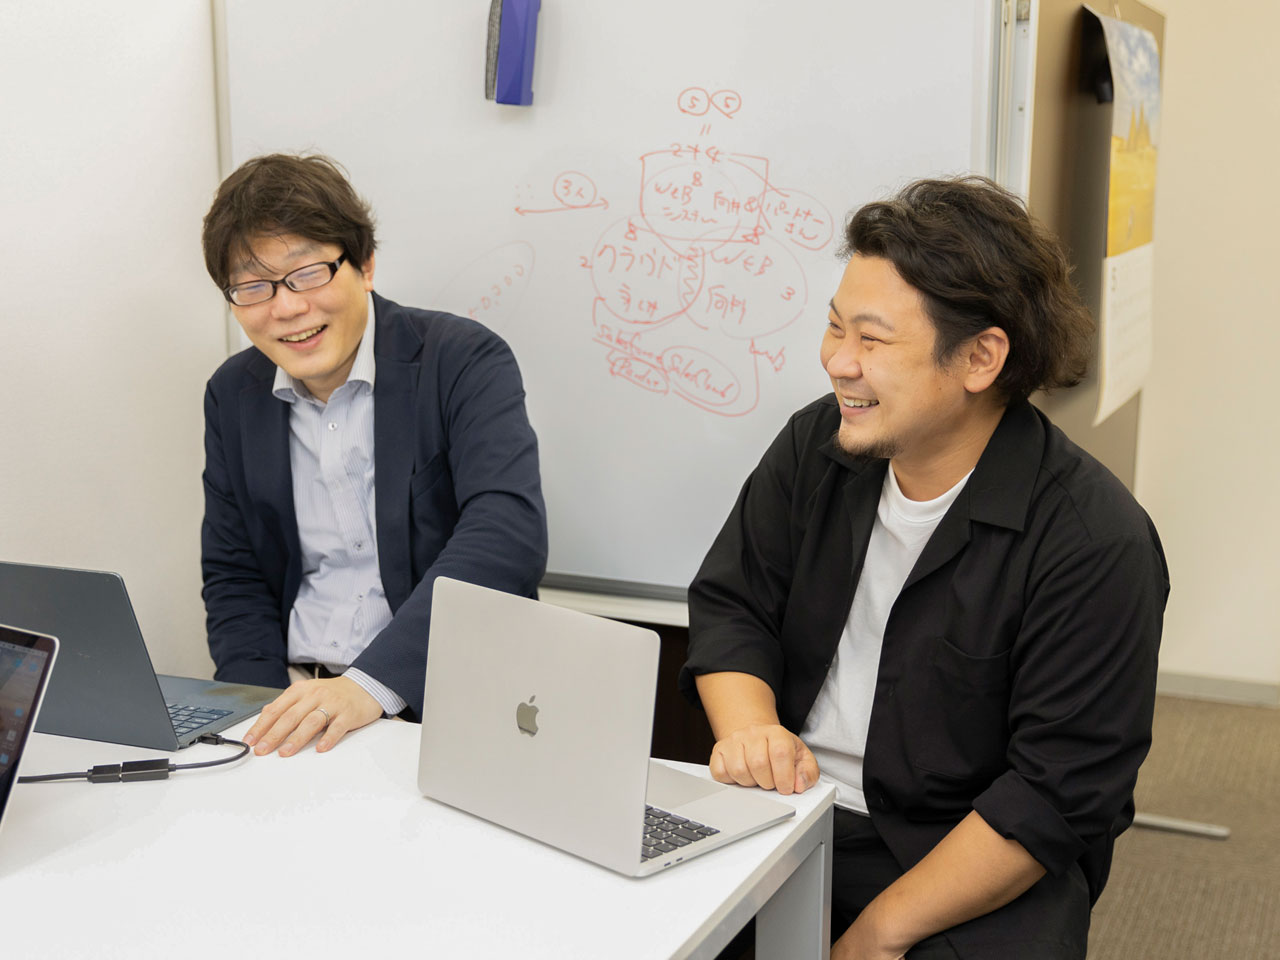 永井氏はマーケティングツール導入支援の領域を、向井氏はWeb制作の領域をそれぞれ経験。お互いの強みを統合して同社を設立し、関わった全てのプロジェクトを成功に導くことをミッションに掲げた。